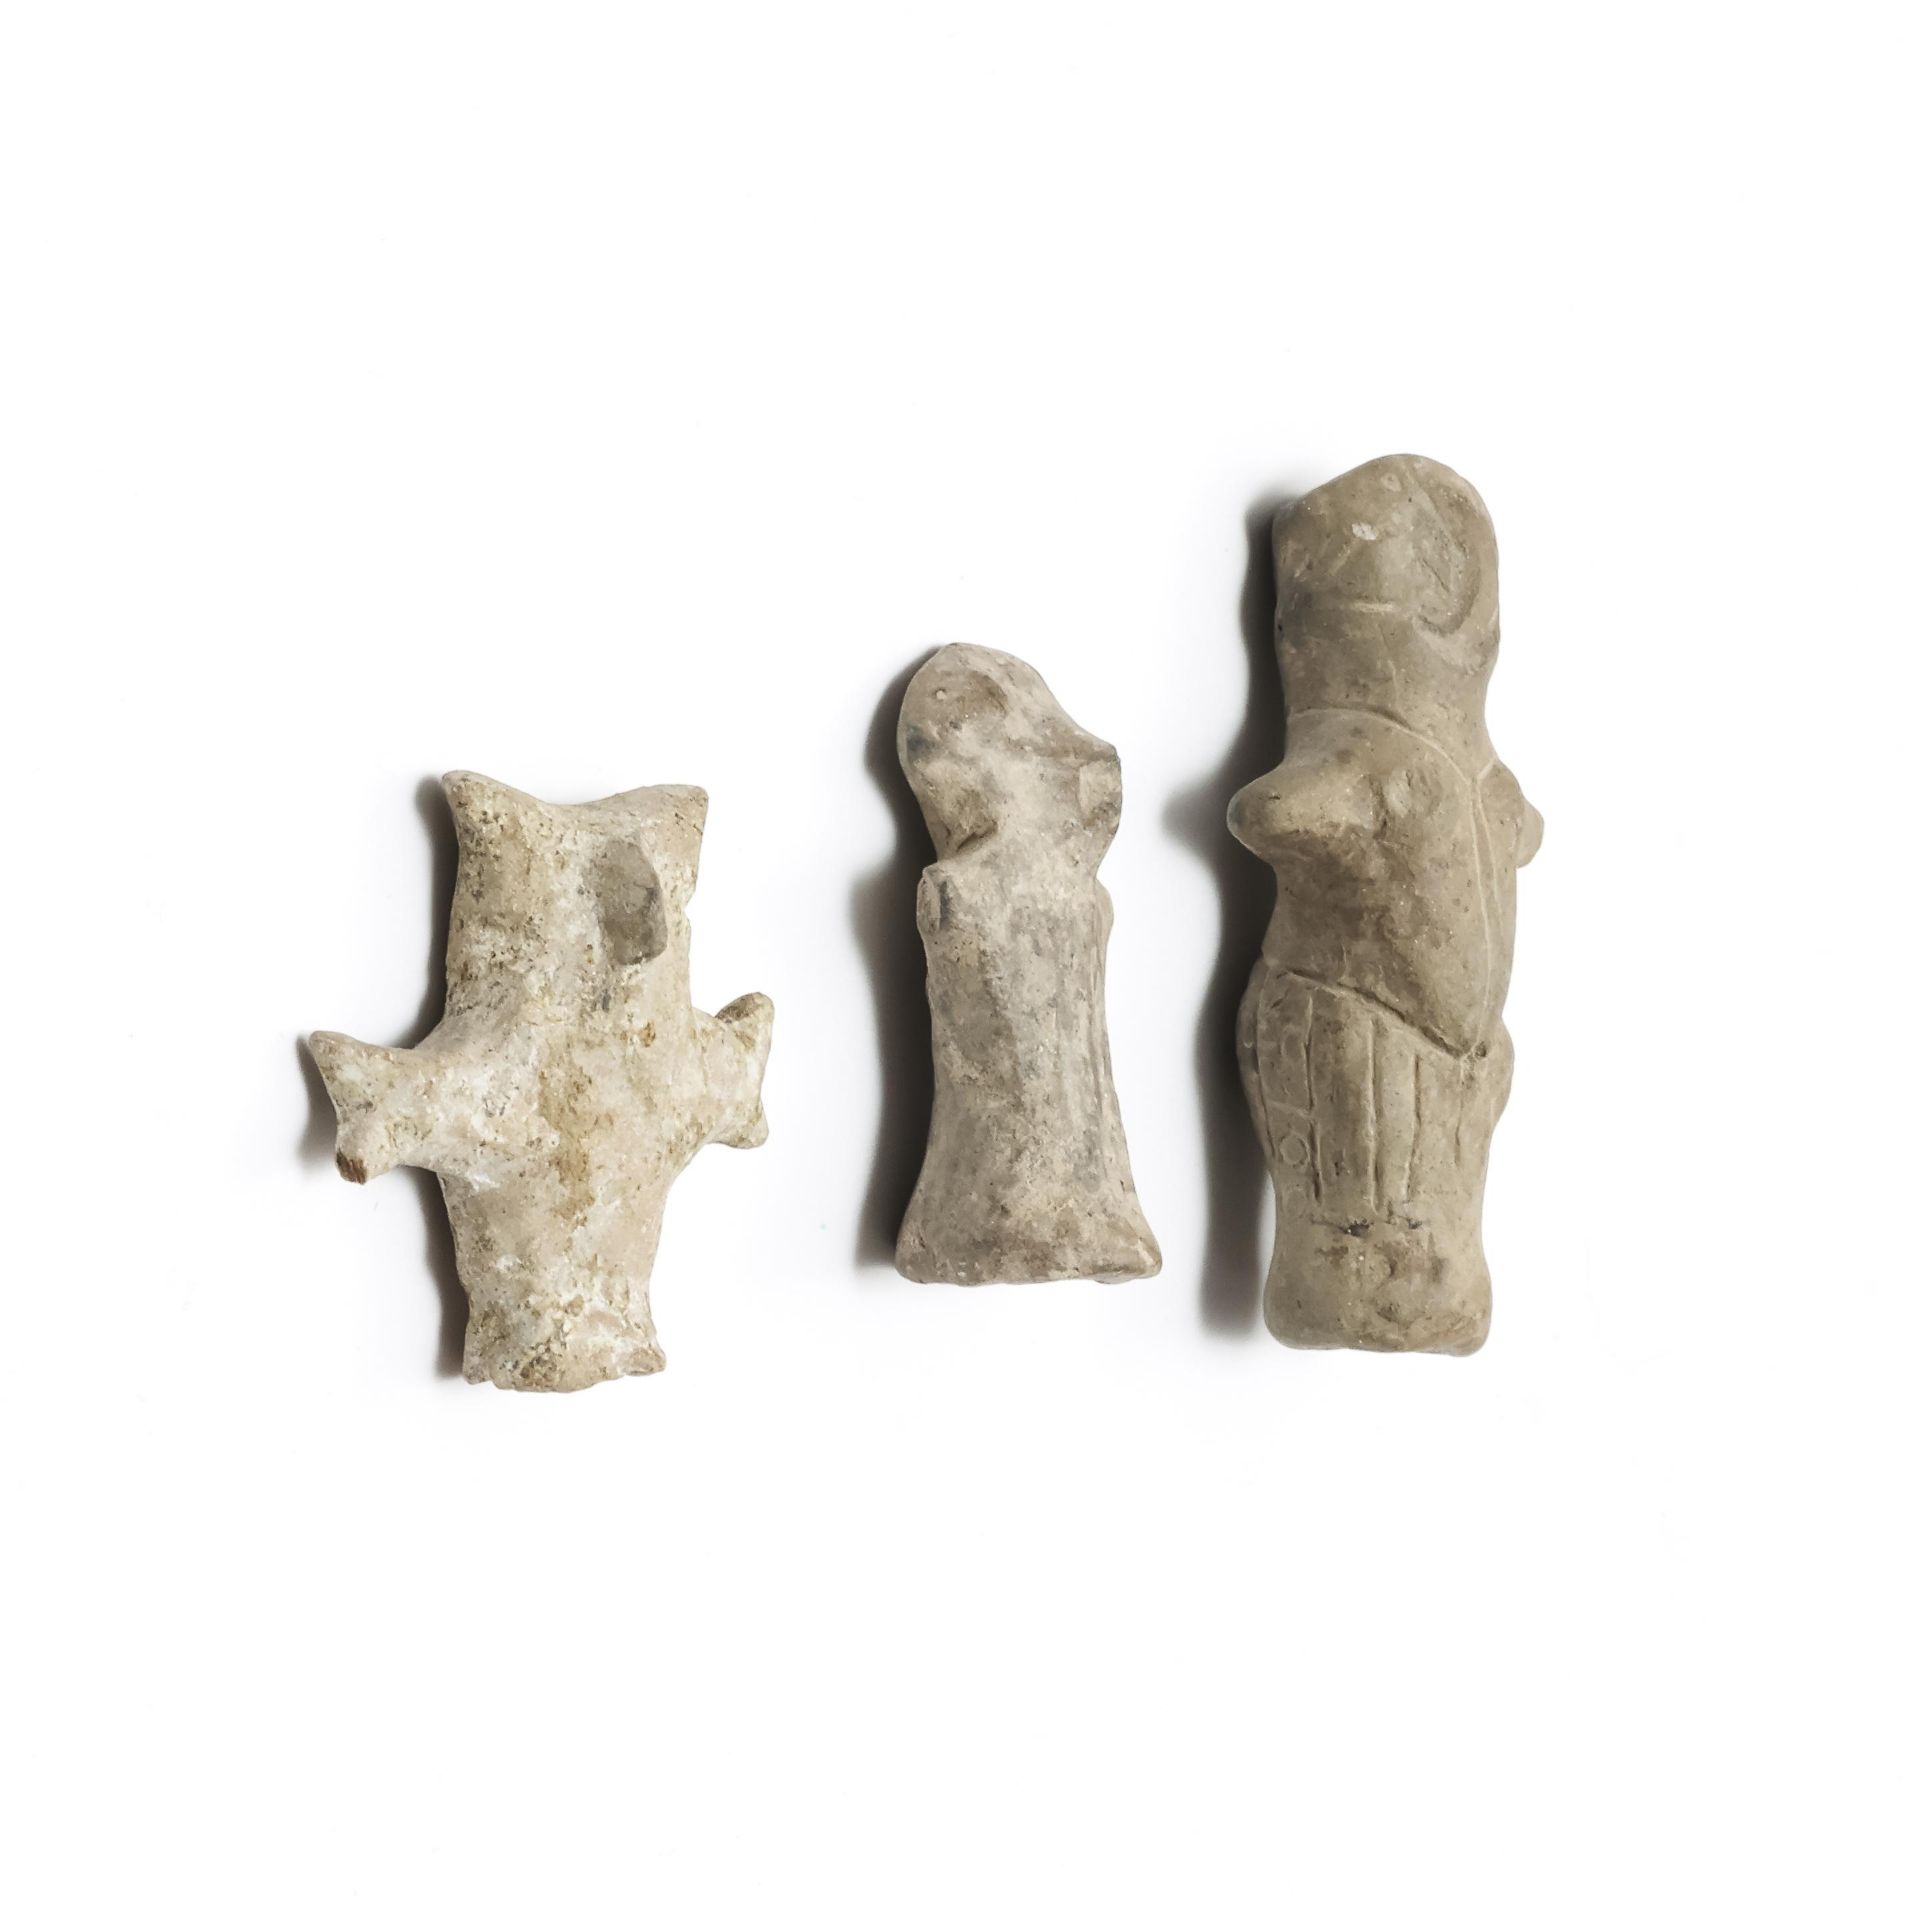 Vinca Culture, three terracotta Idols, ca. 4th Mill BC.